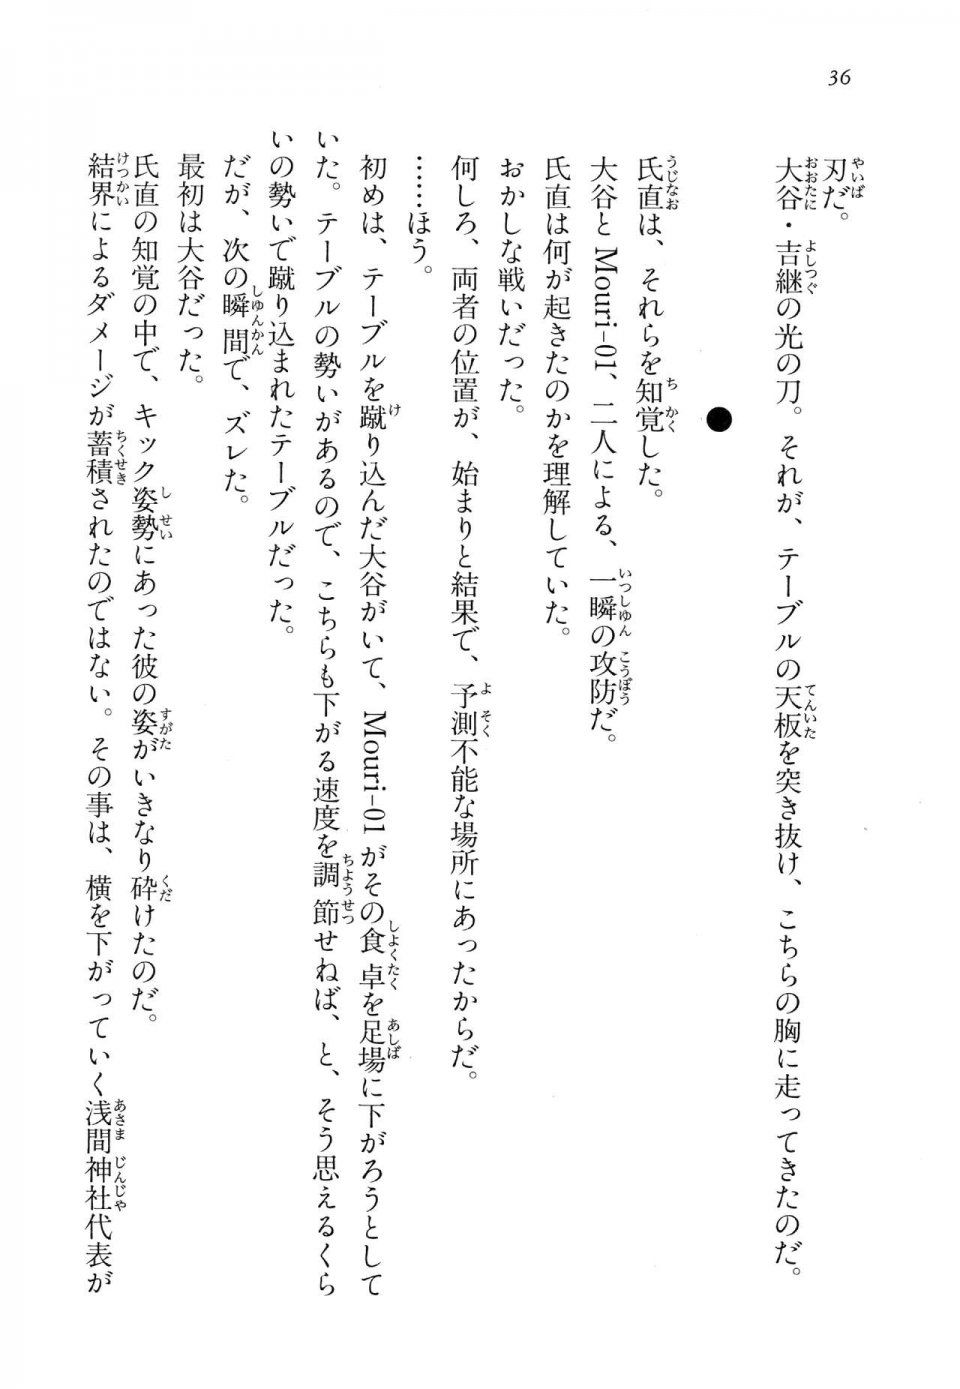 Kyoukai Senjou no Horizon LN Vol 14(6B) - Photo #36